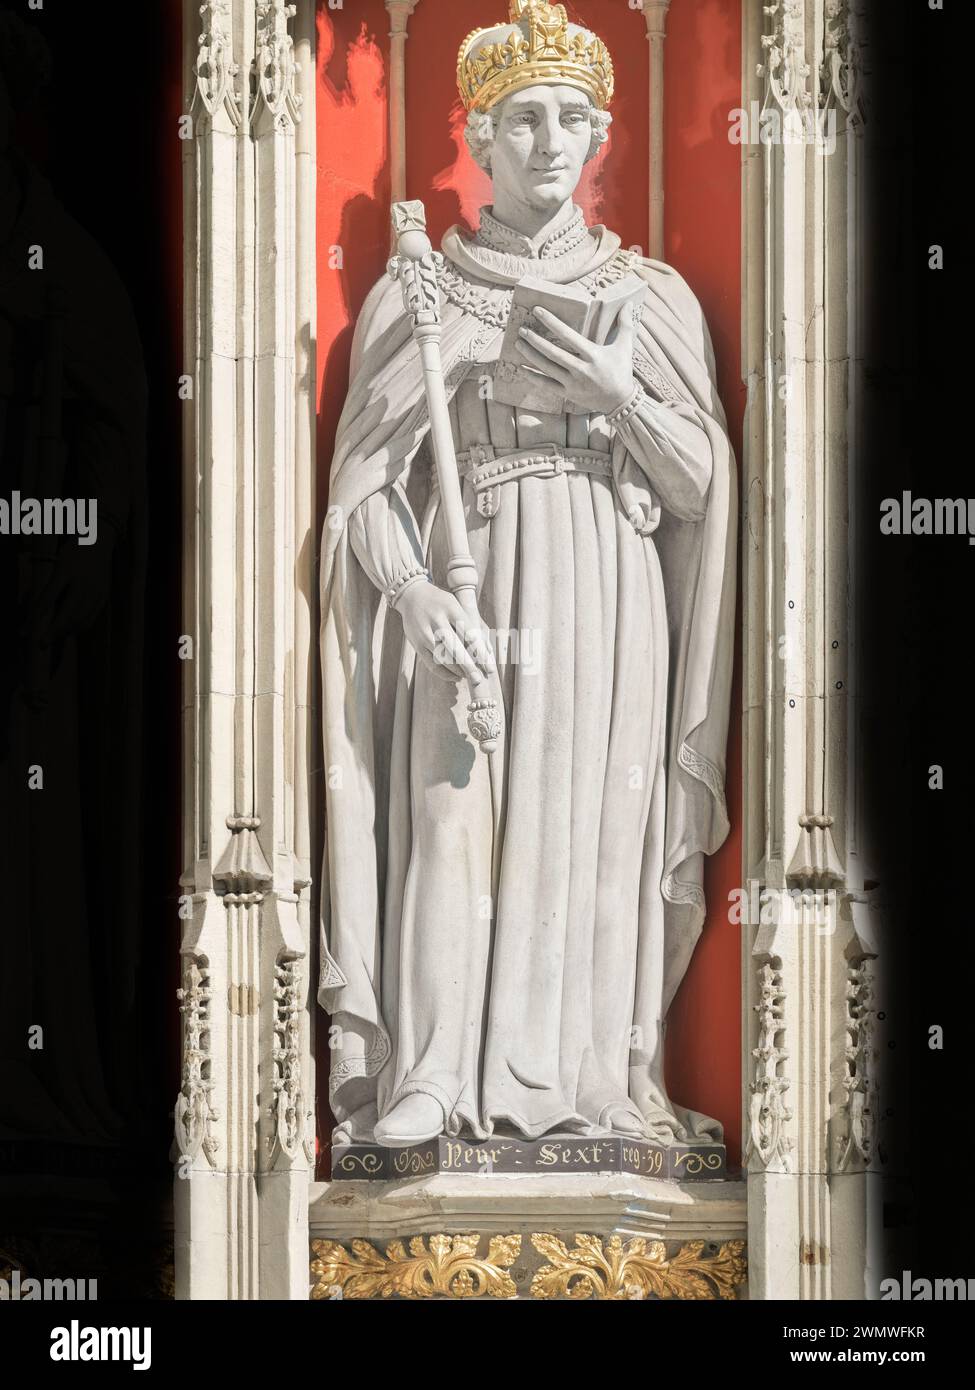 Statue eines mittelalterlichen englischen Königs, Heinrich VI., auf der Leinwand im Münster (Kathedrale) in York, England. Stockfoto